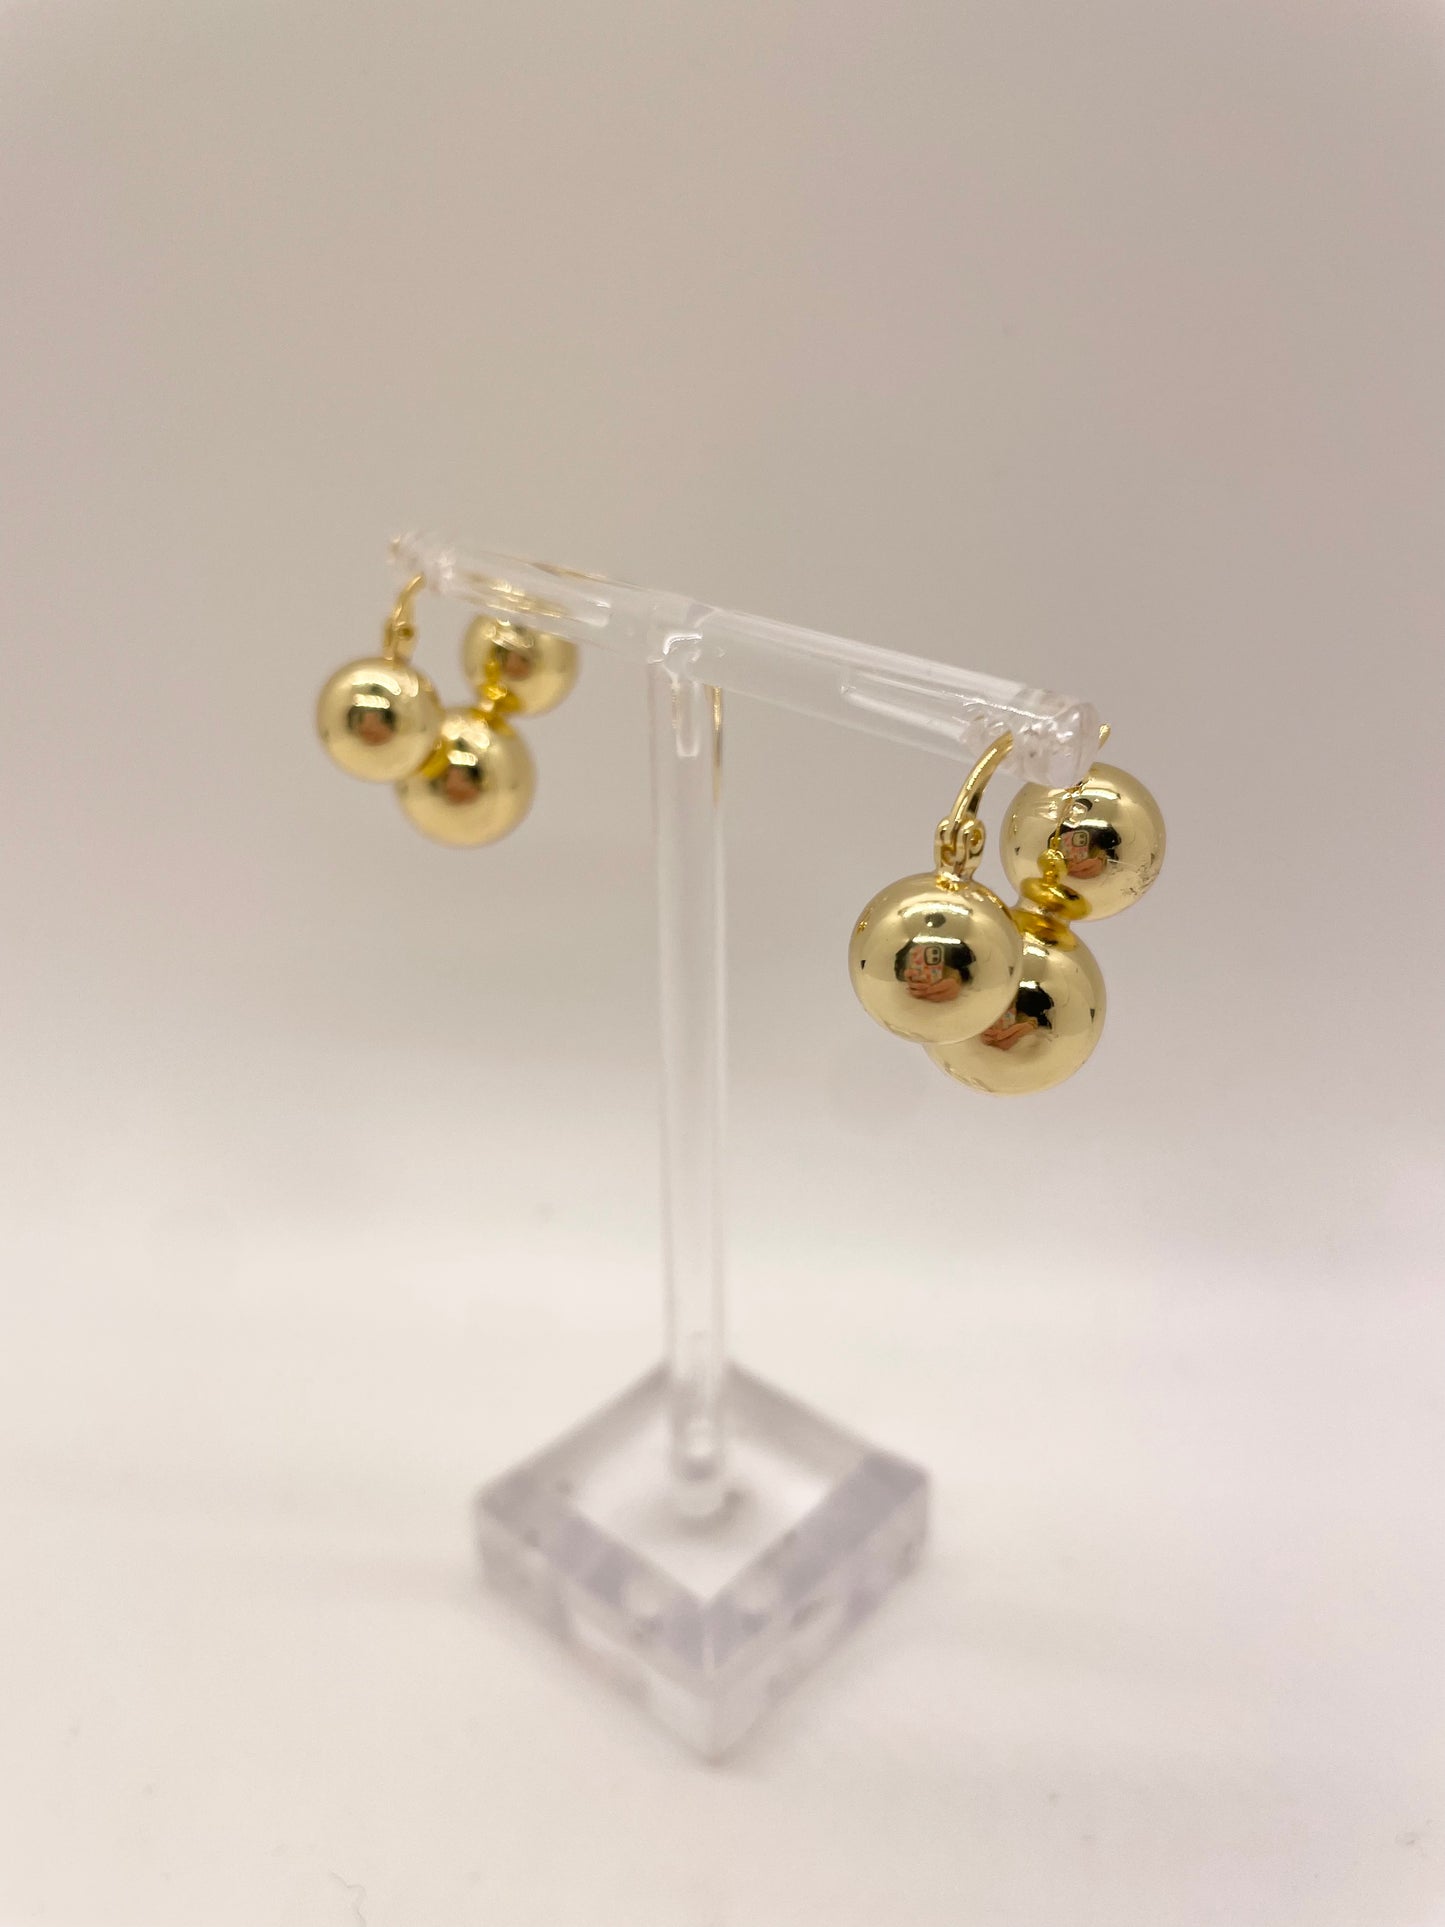 Gold Cluster Huggie Earrings